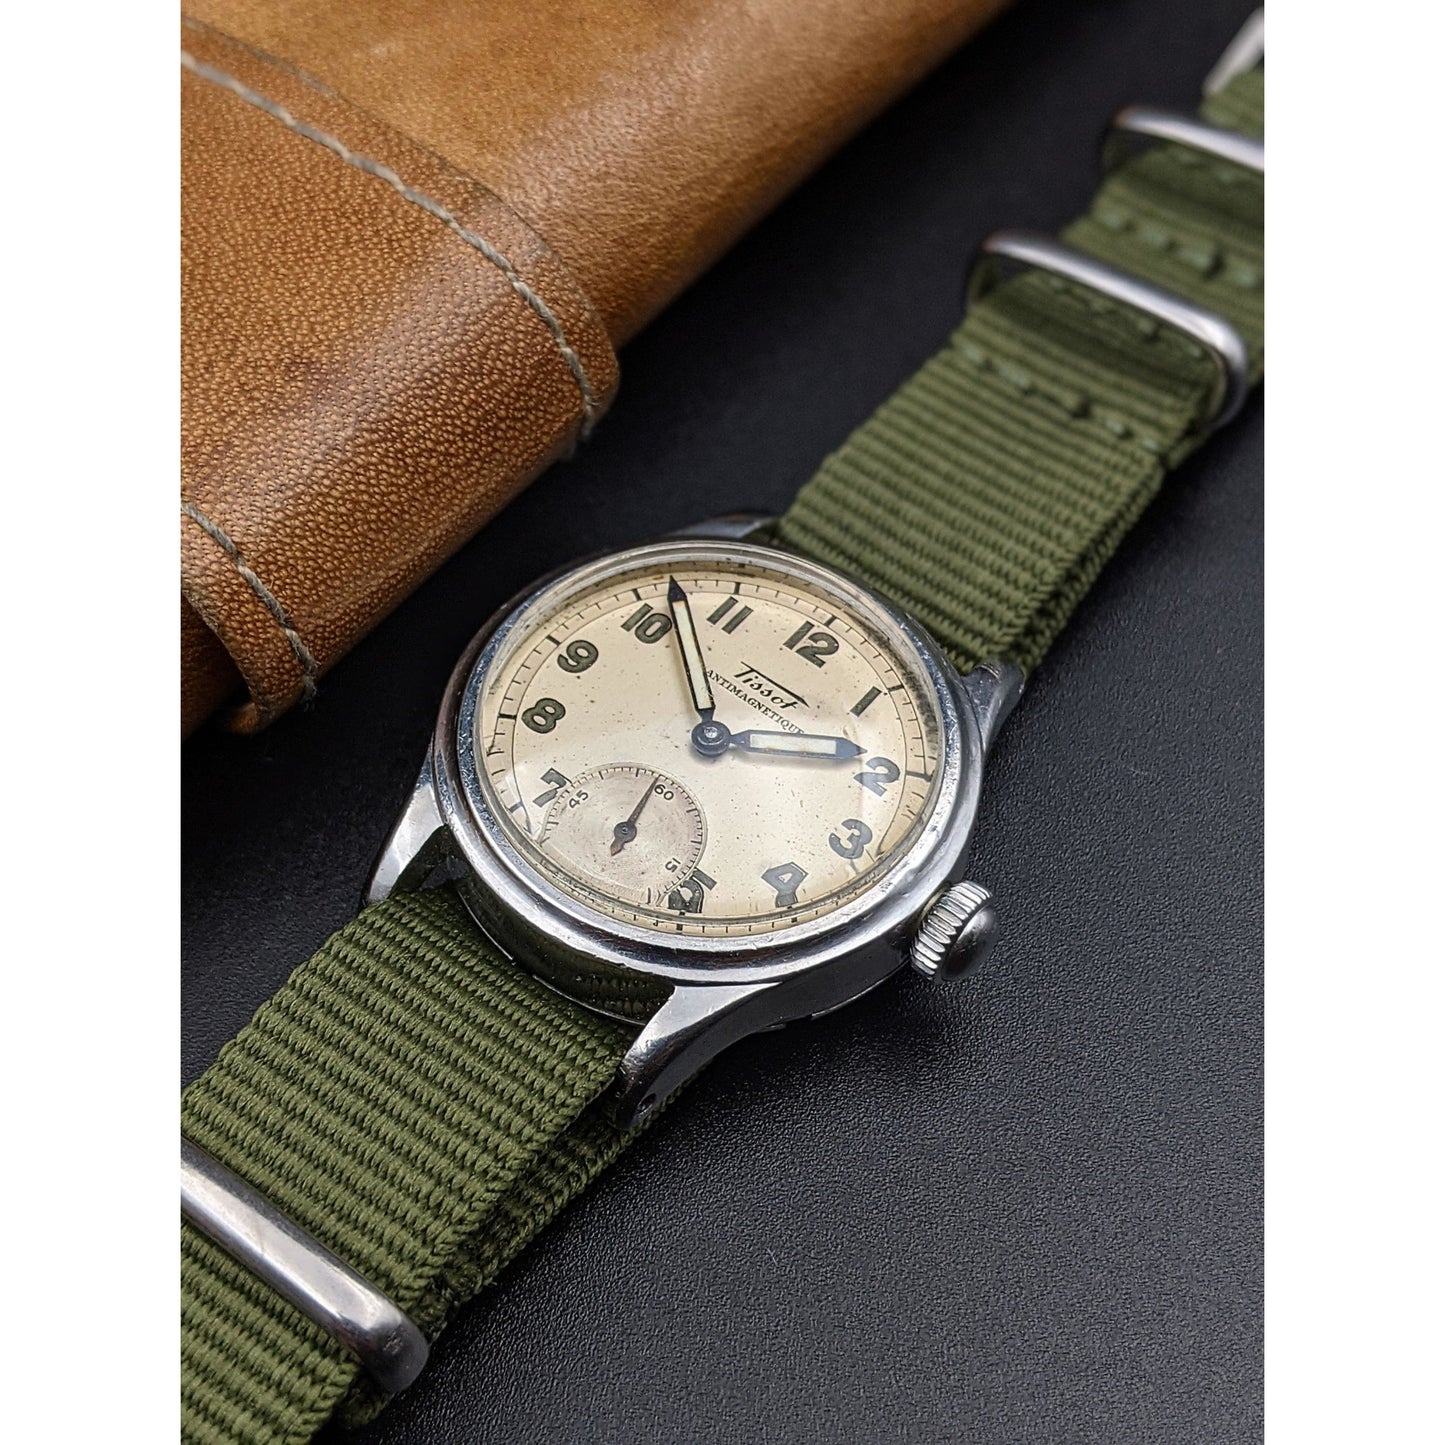 Rare Tissot WWII Type Watch as RAF/ Vintage 1940 / cal.27/ Serviced - E-V-W.com